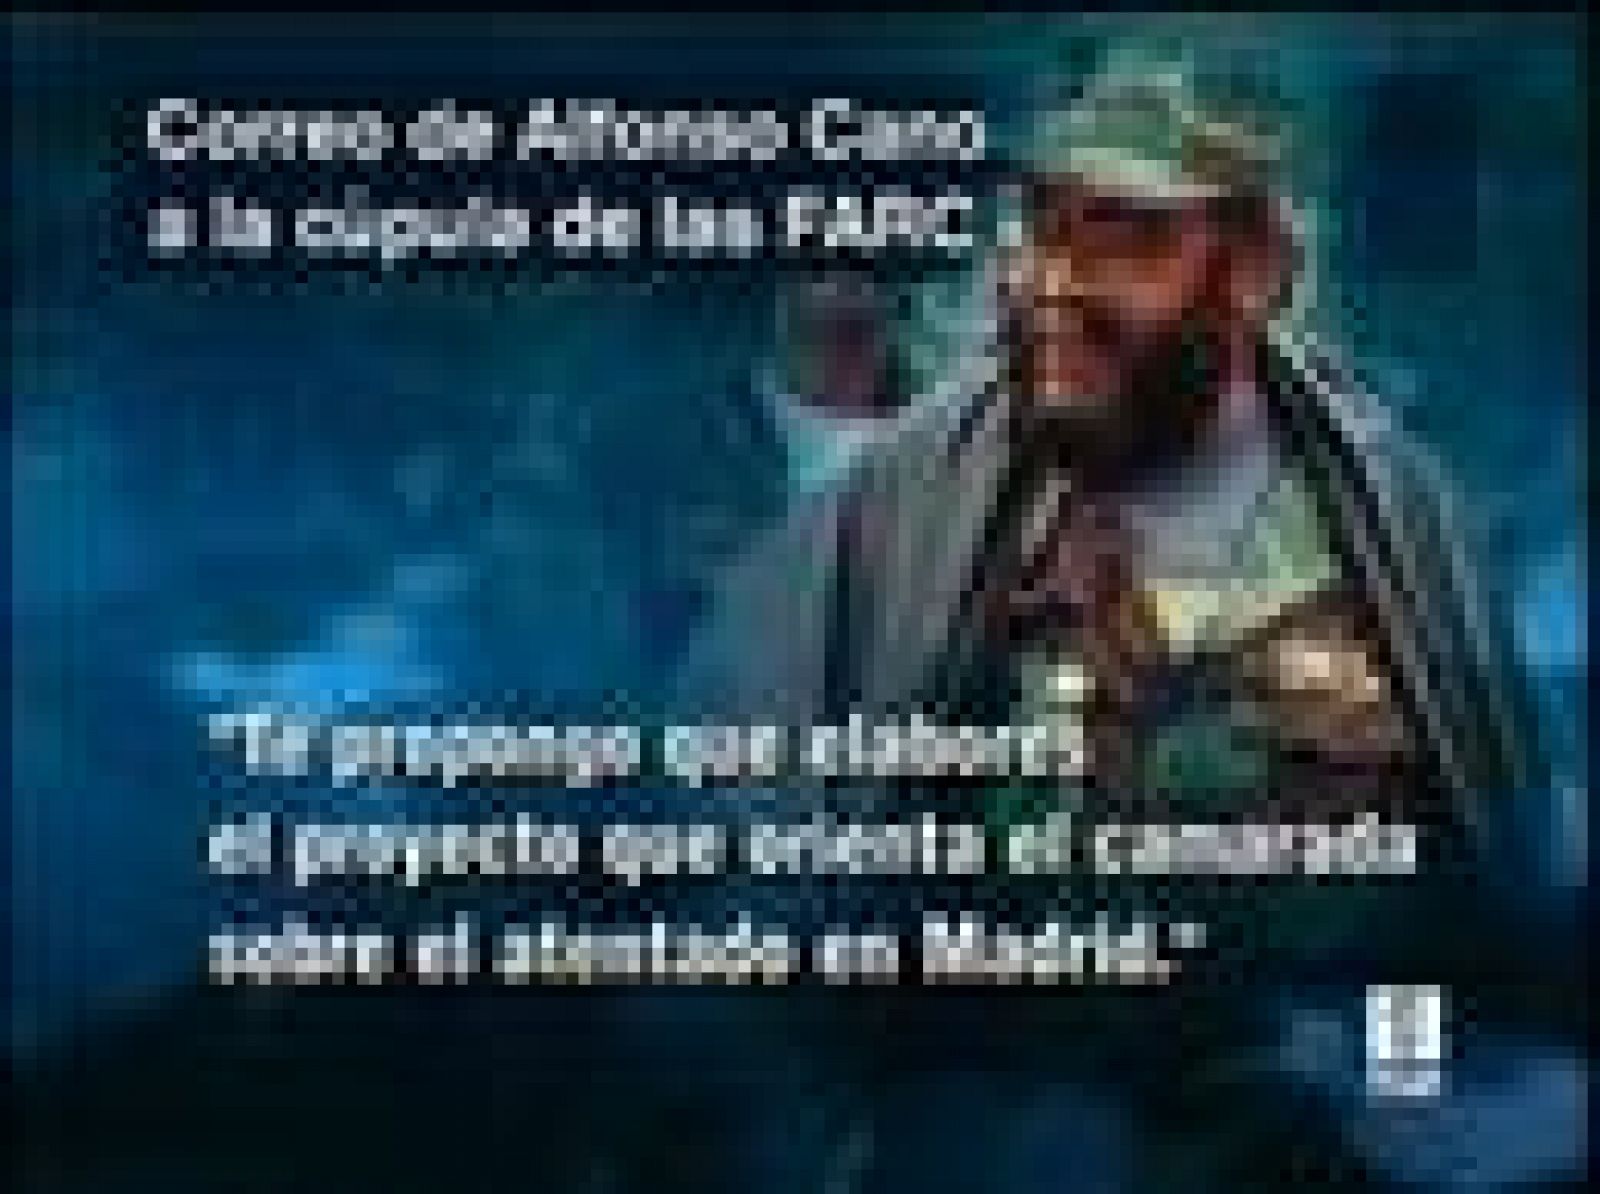  Las FARC planeaban un atentado terrorista en Madrid contra personalidades colombianas, según nueva información obtenida del ordenador del guerrillero muerto Raúl Reyes. Las autoridades han revelado un correo electrónico en el que el actual líder de las FARC, Alfonso Cano, apoyaba ese supuesto atentado.